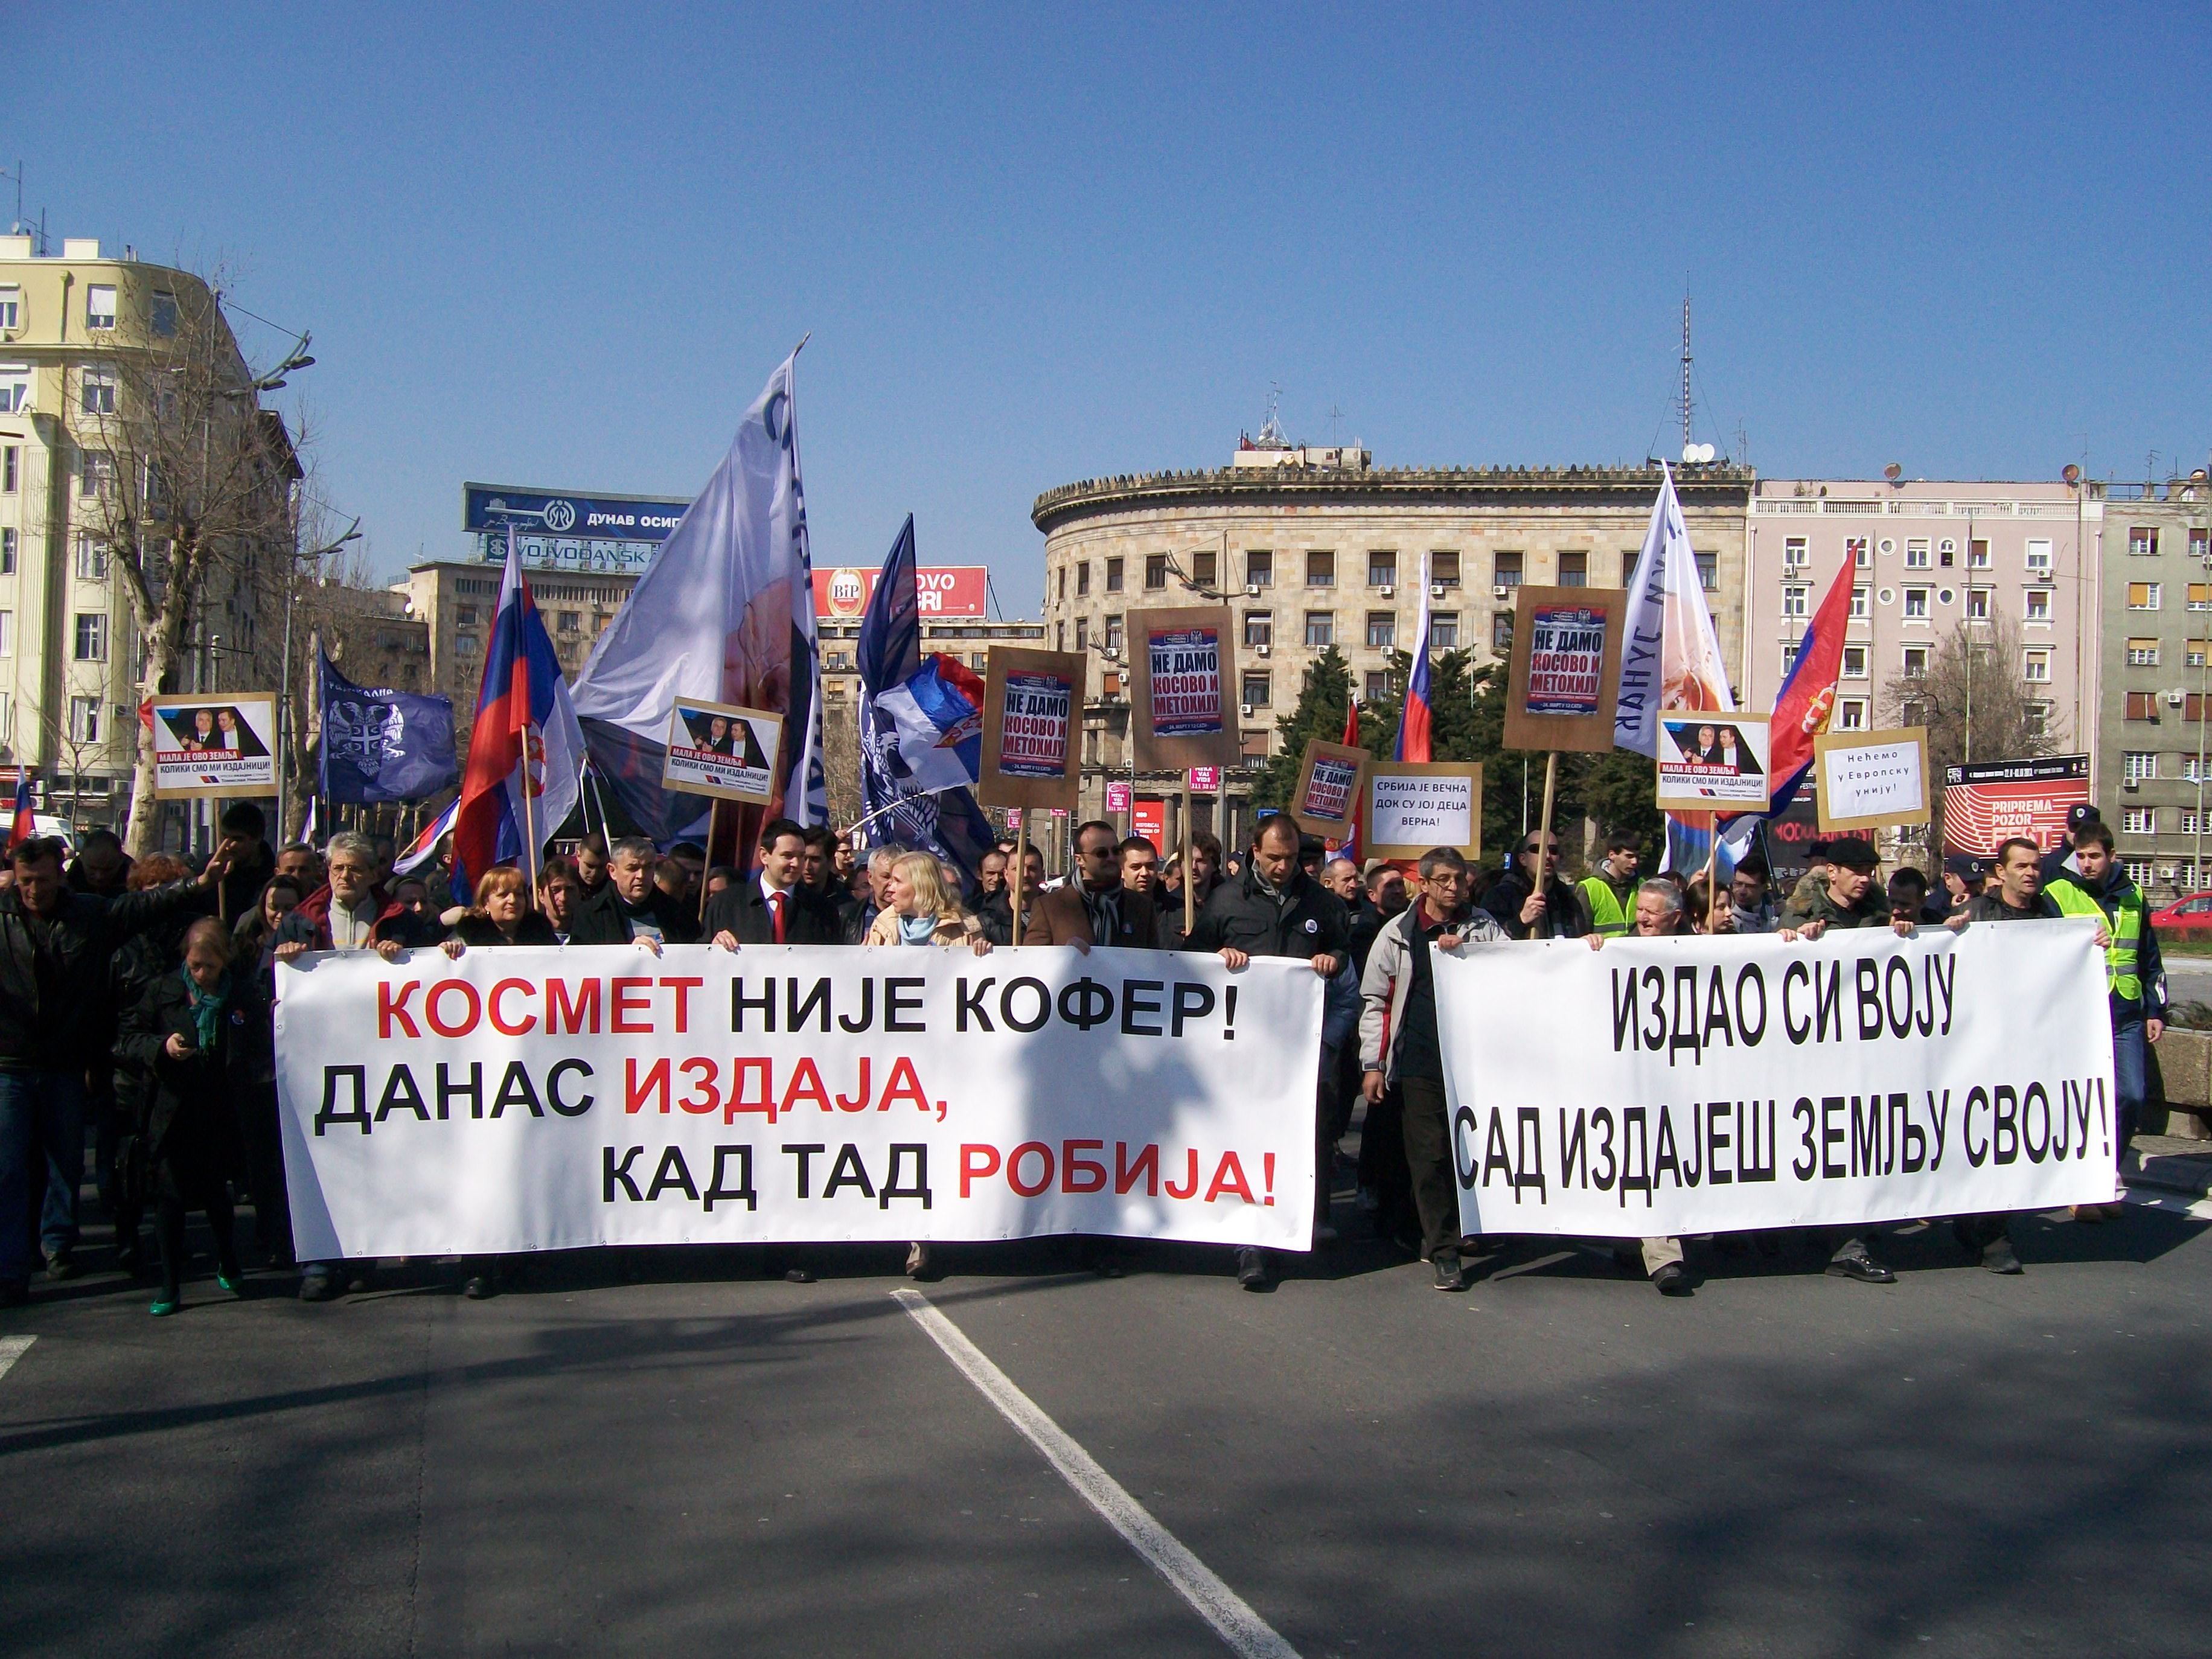 Радикали: Велики народни протест “Не дамо Косово и Метохију”